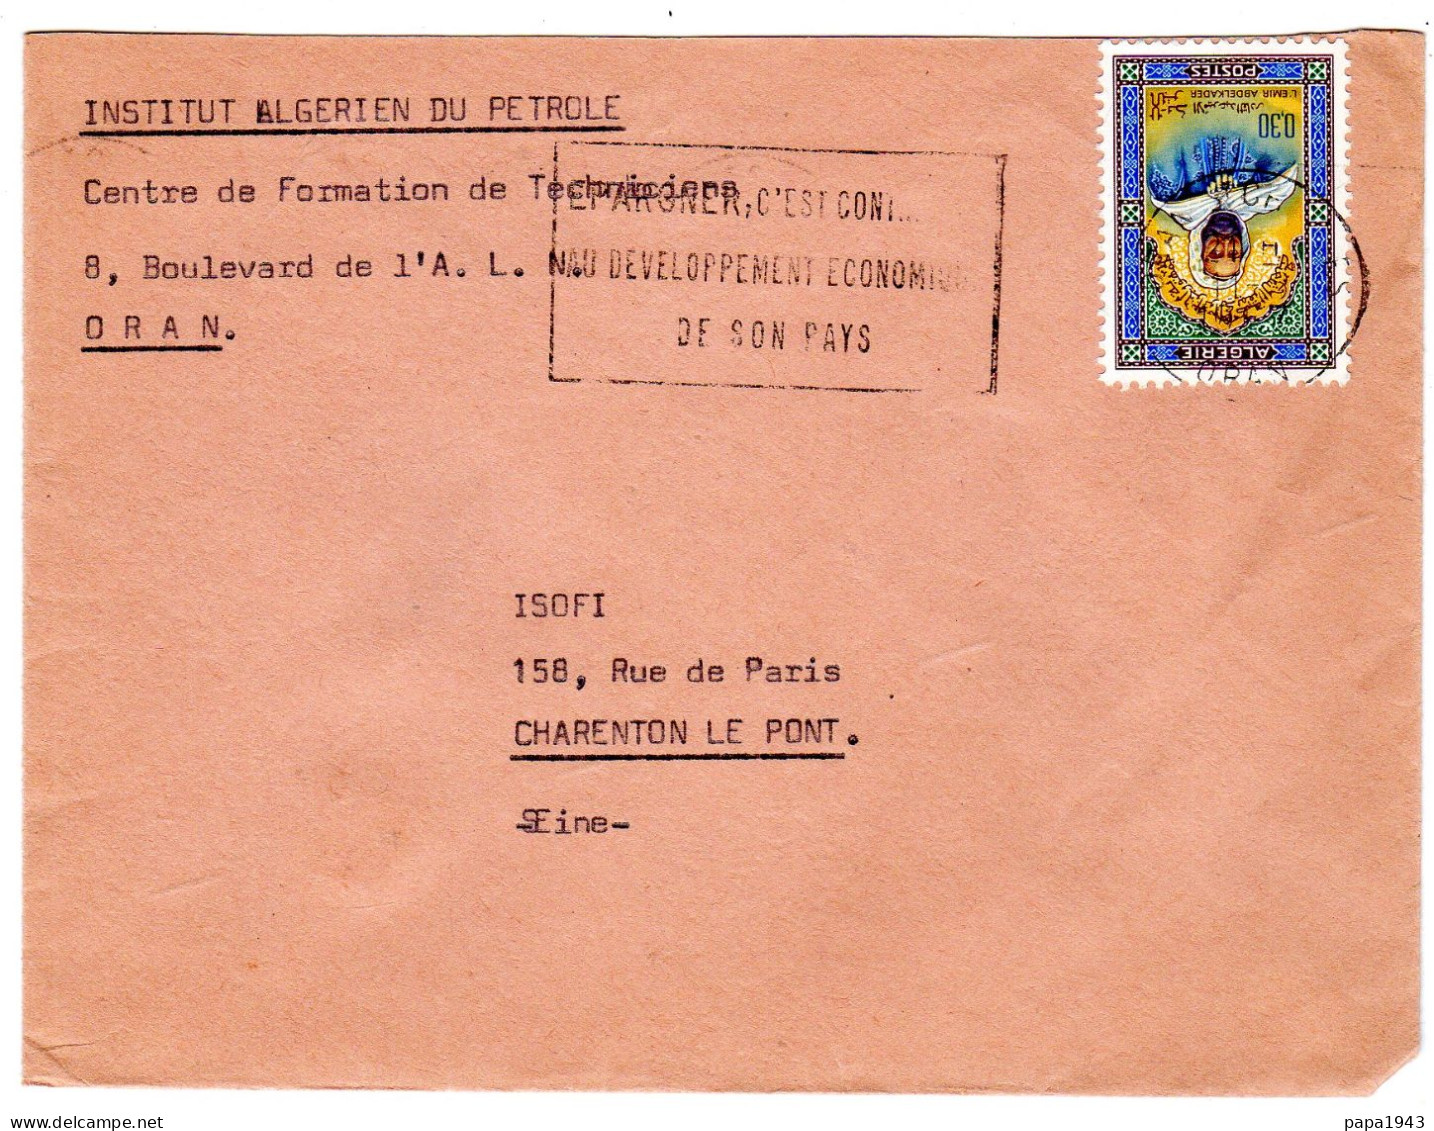 "  INSTITUT ALGERIEN DU PETROLE  ORAN "  Envoyée à CHARENTON LE PONT - Algérie (1962-...)